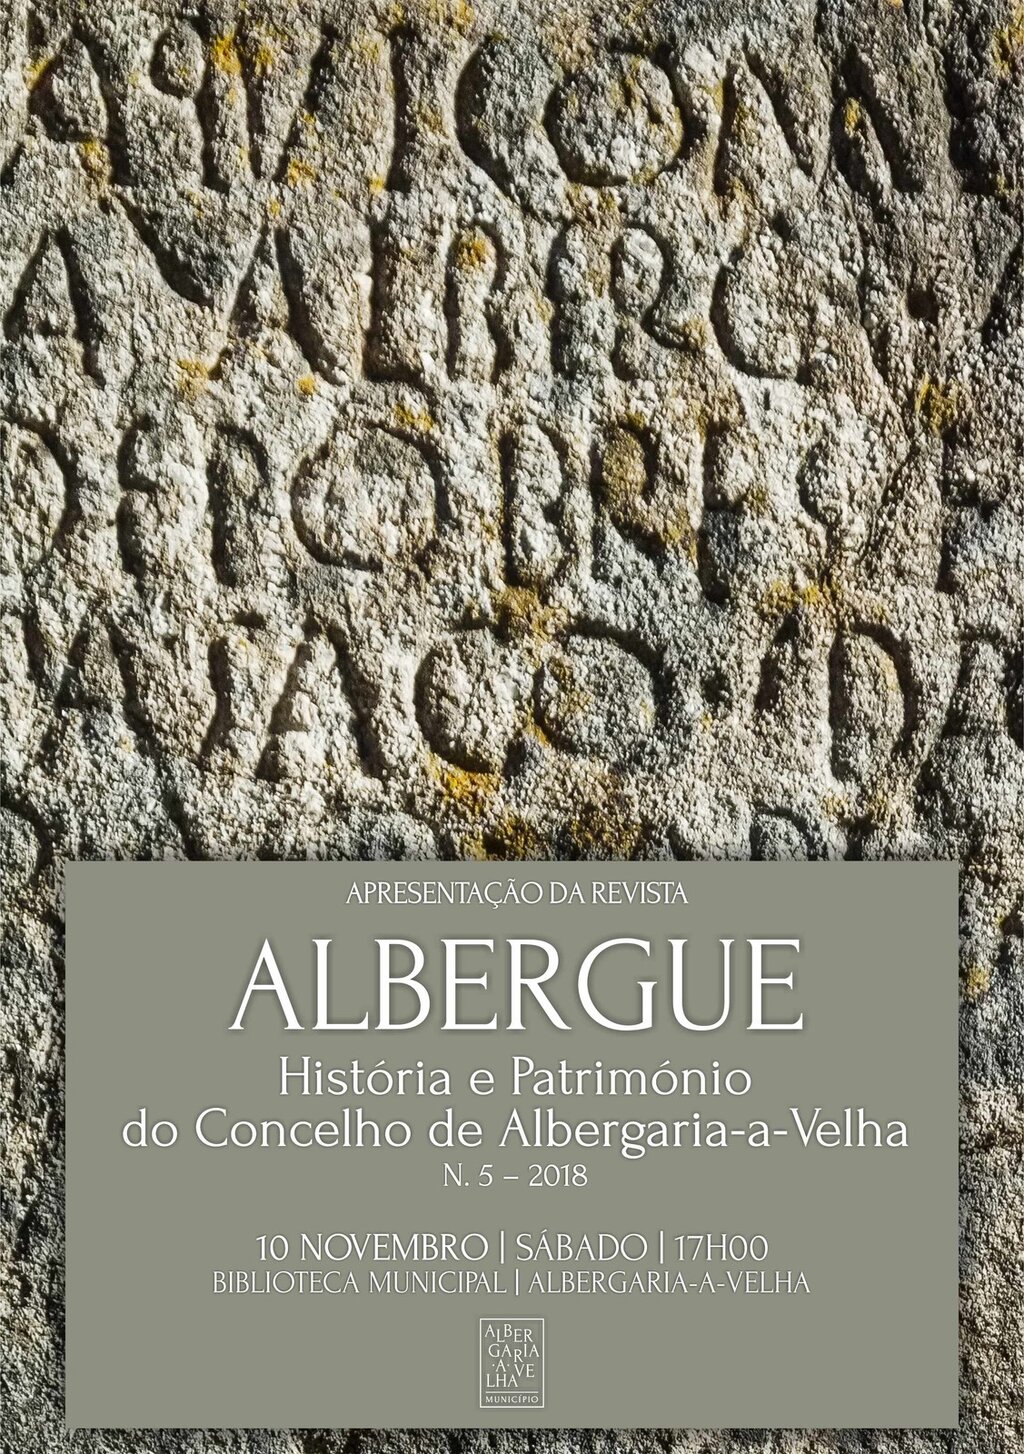 Município de Albergaria-a-Velha edita novo volume da Revista Albergue